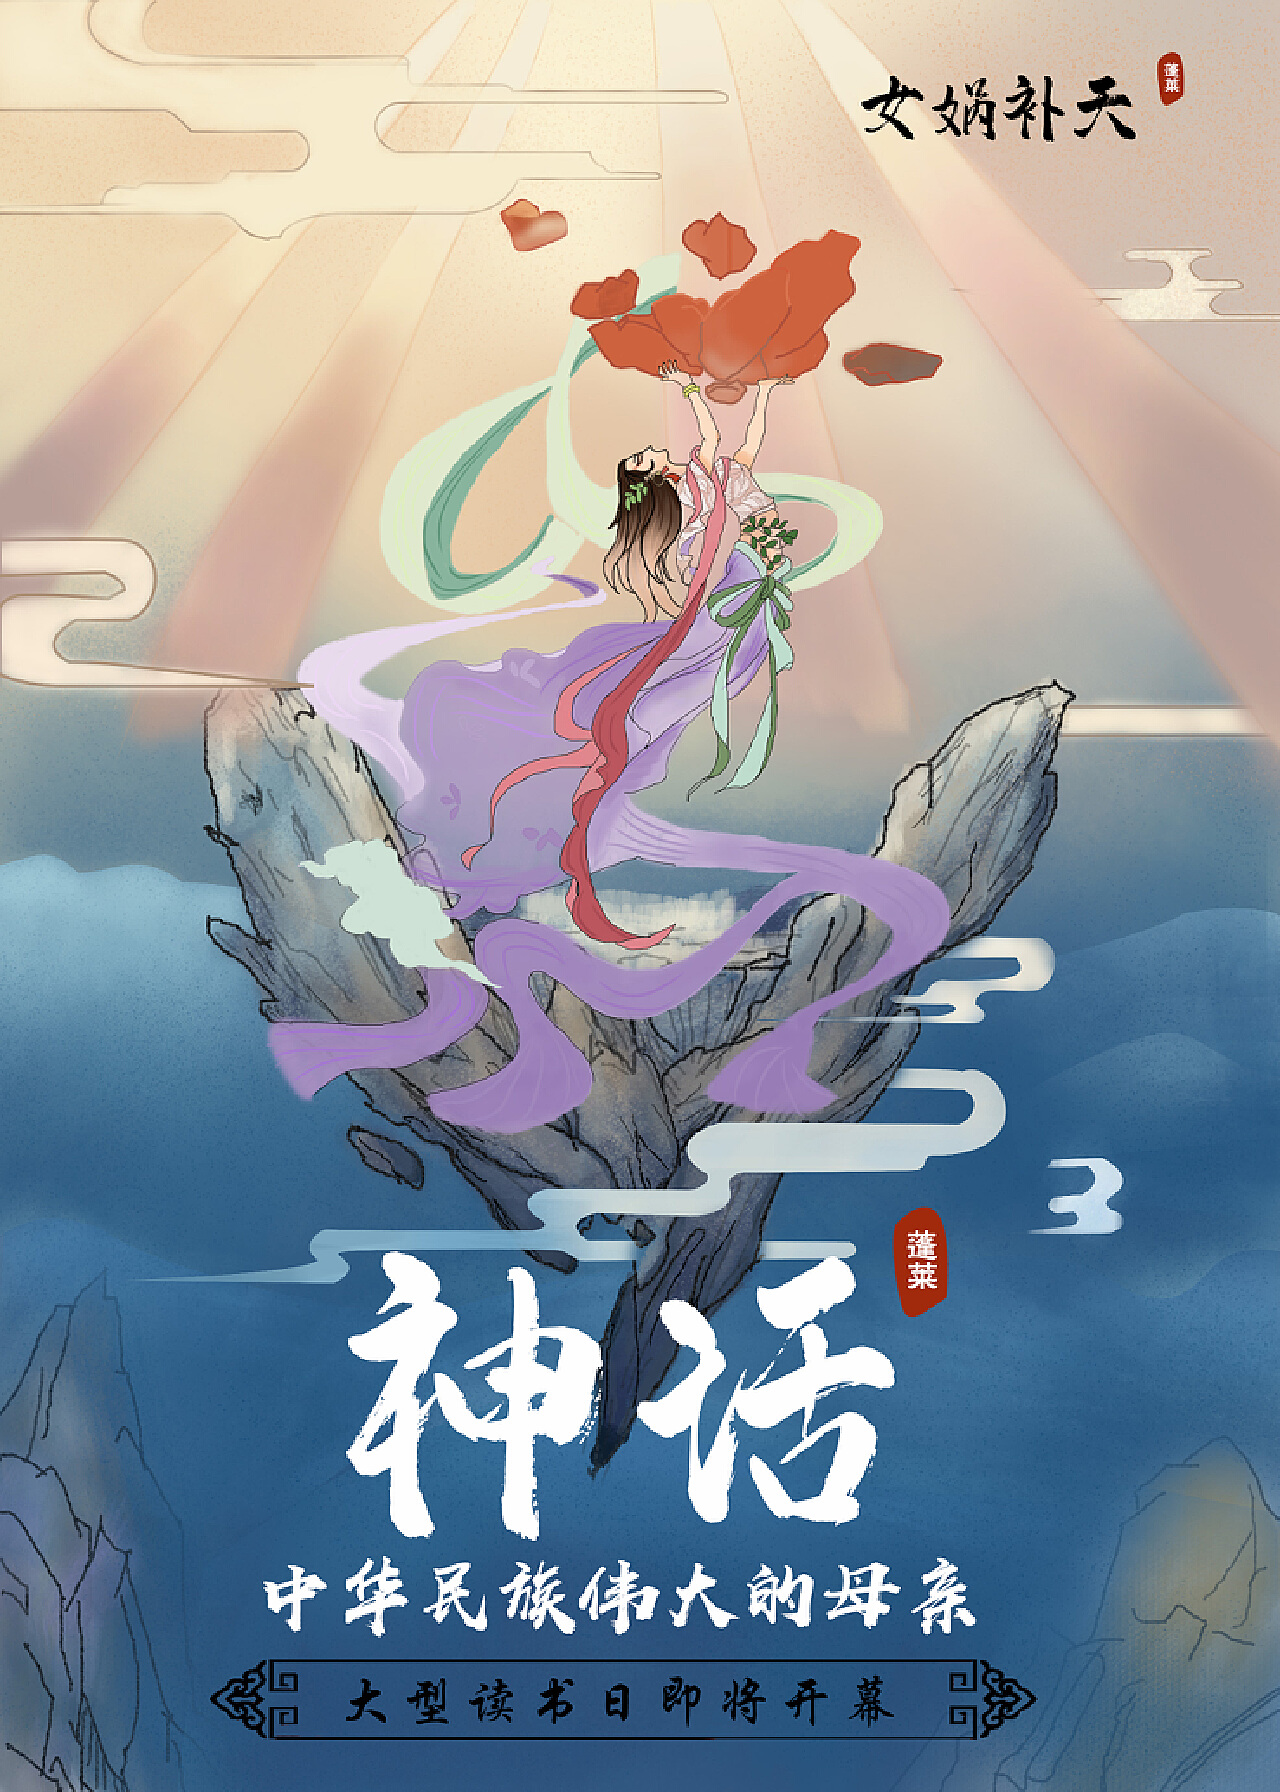 羽中YuZhong - 神话书说系列插图Myth Words Illustration